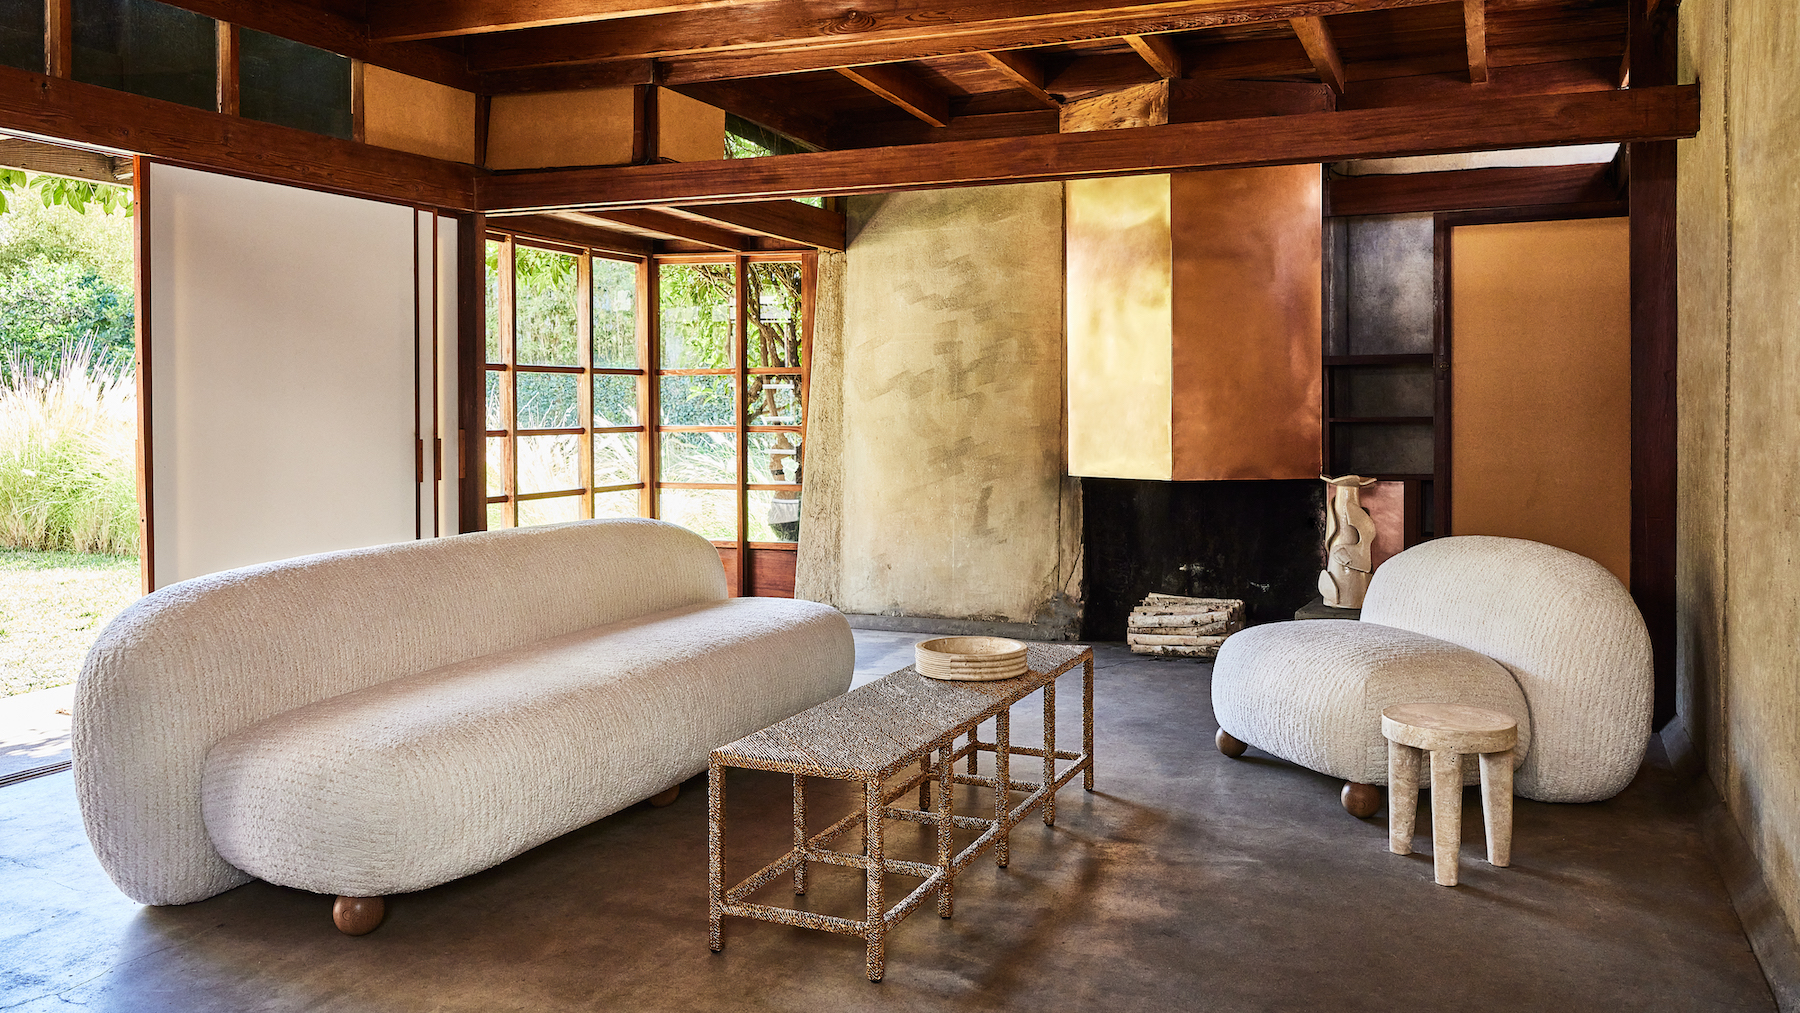 Morro sofa designed by interior designer Kelly Wearstler in Effect Magazine